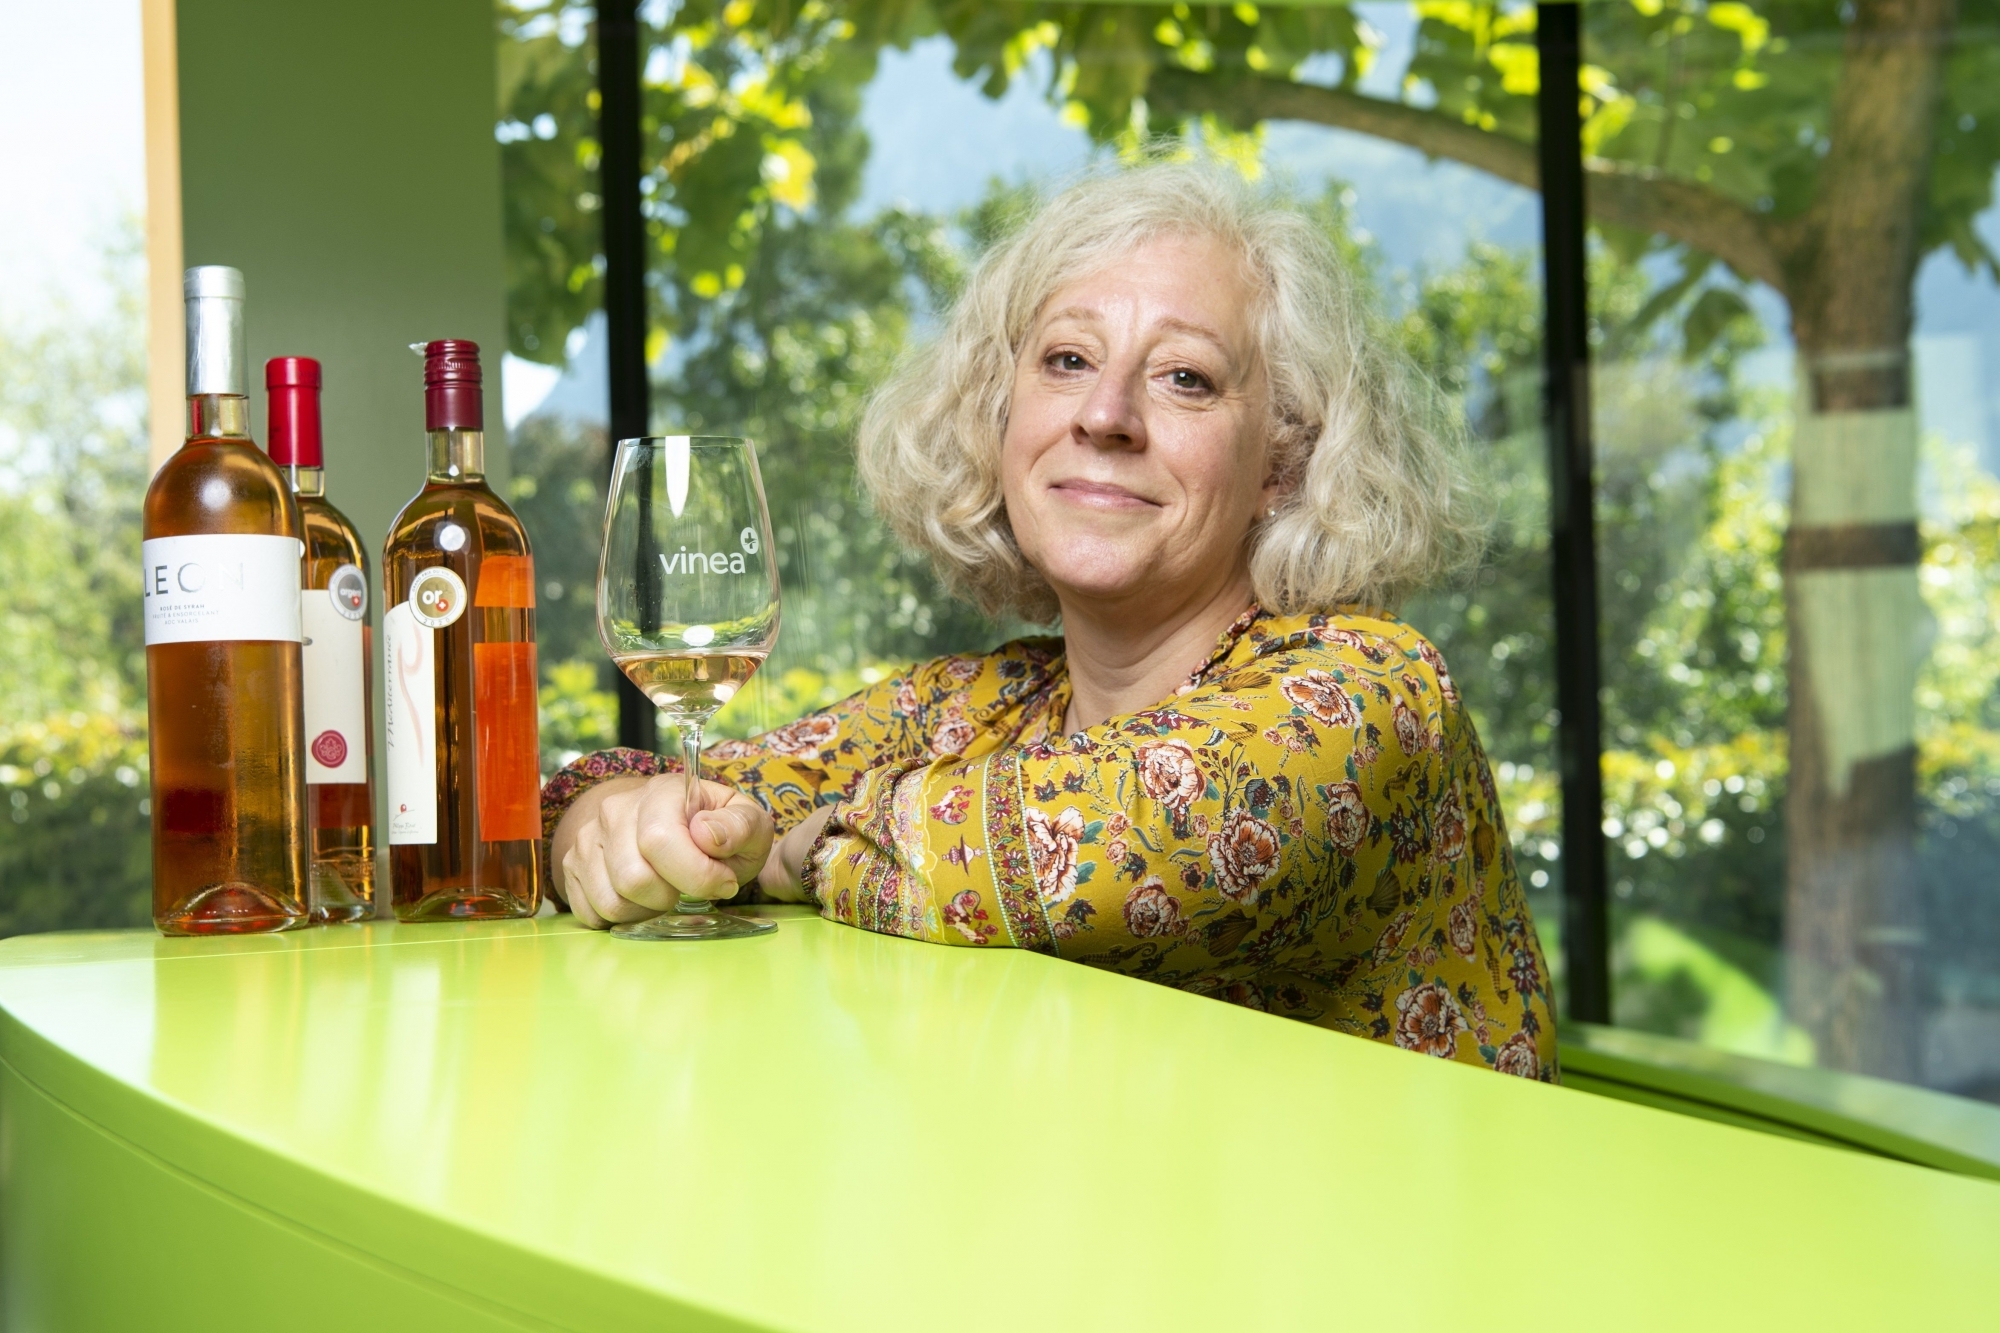 Spécialiste du rosé, la master of wine Elizabeth Gabay a fait partie du jury du Mondial des pinots dont les dégustations se sont déroulées à Sierre du 4 au 6 septembre.